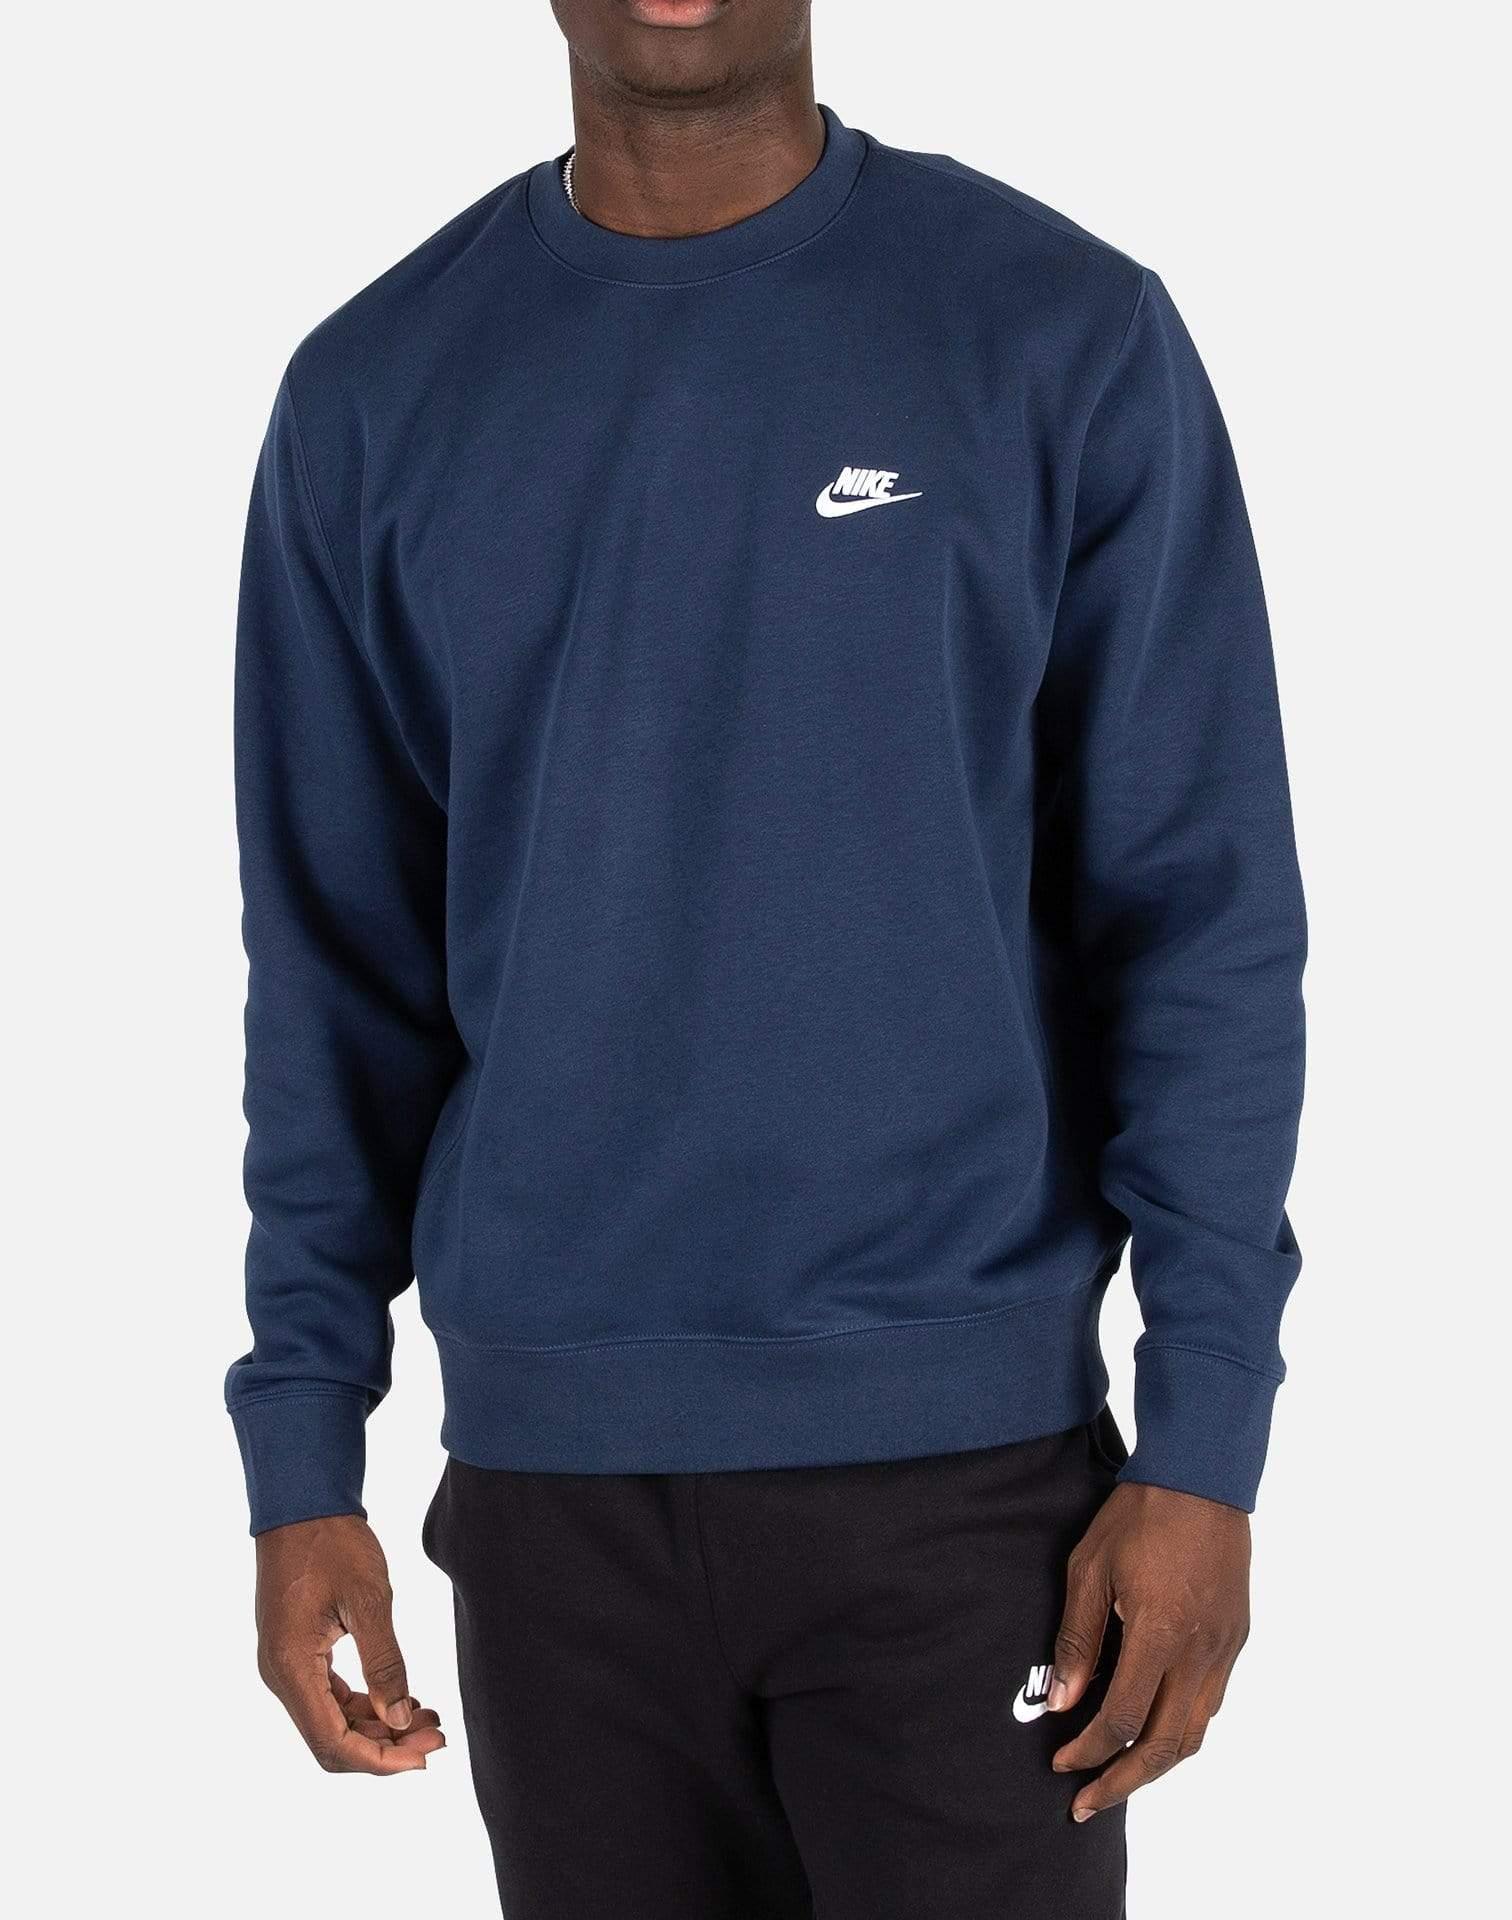 Nike Nsw Club Fleece Crew Sweatshirt in Blue for Men - Lyst